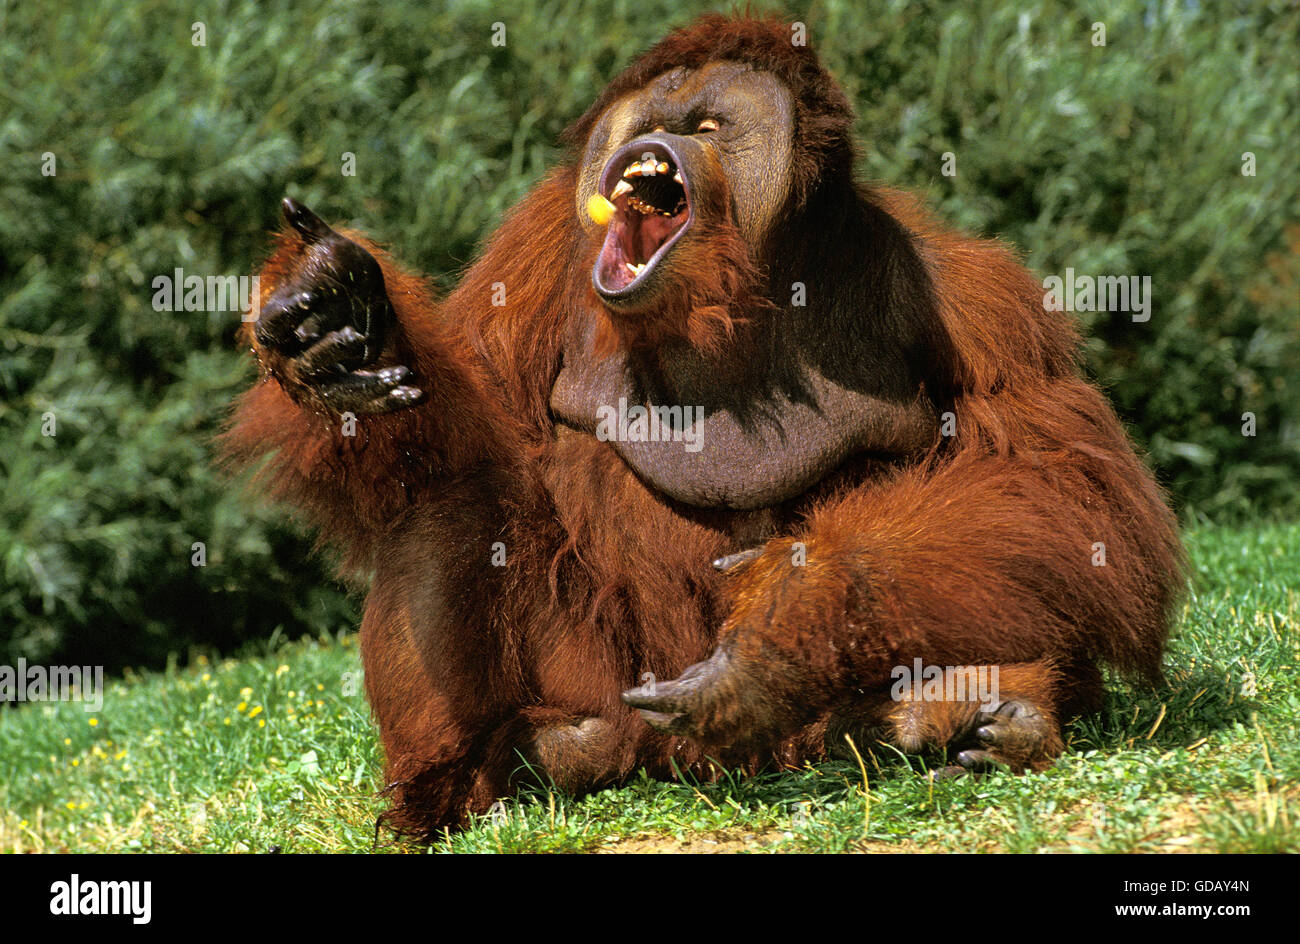 Orang Utan, pongo pygmaeus, Male eating Fruit with Open Mouth Stock Photo